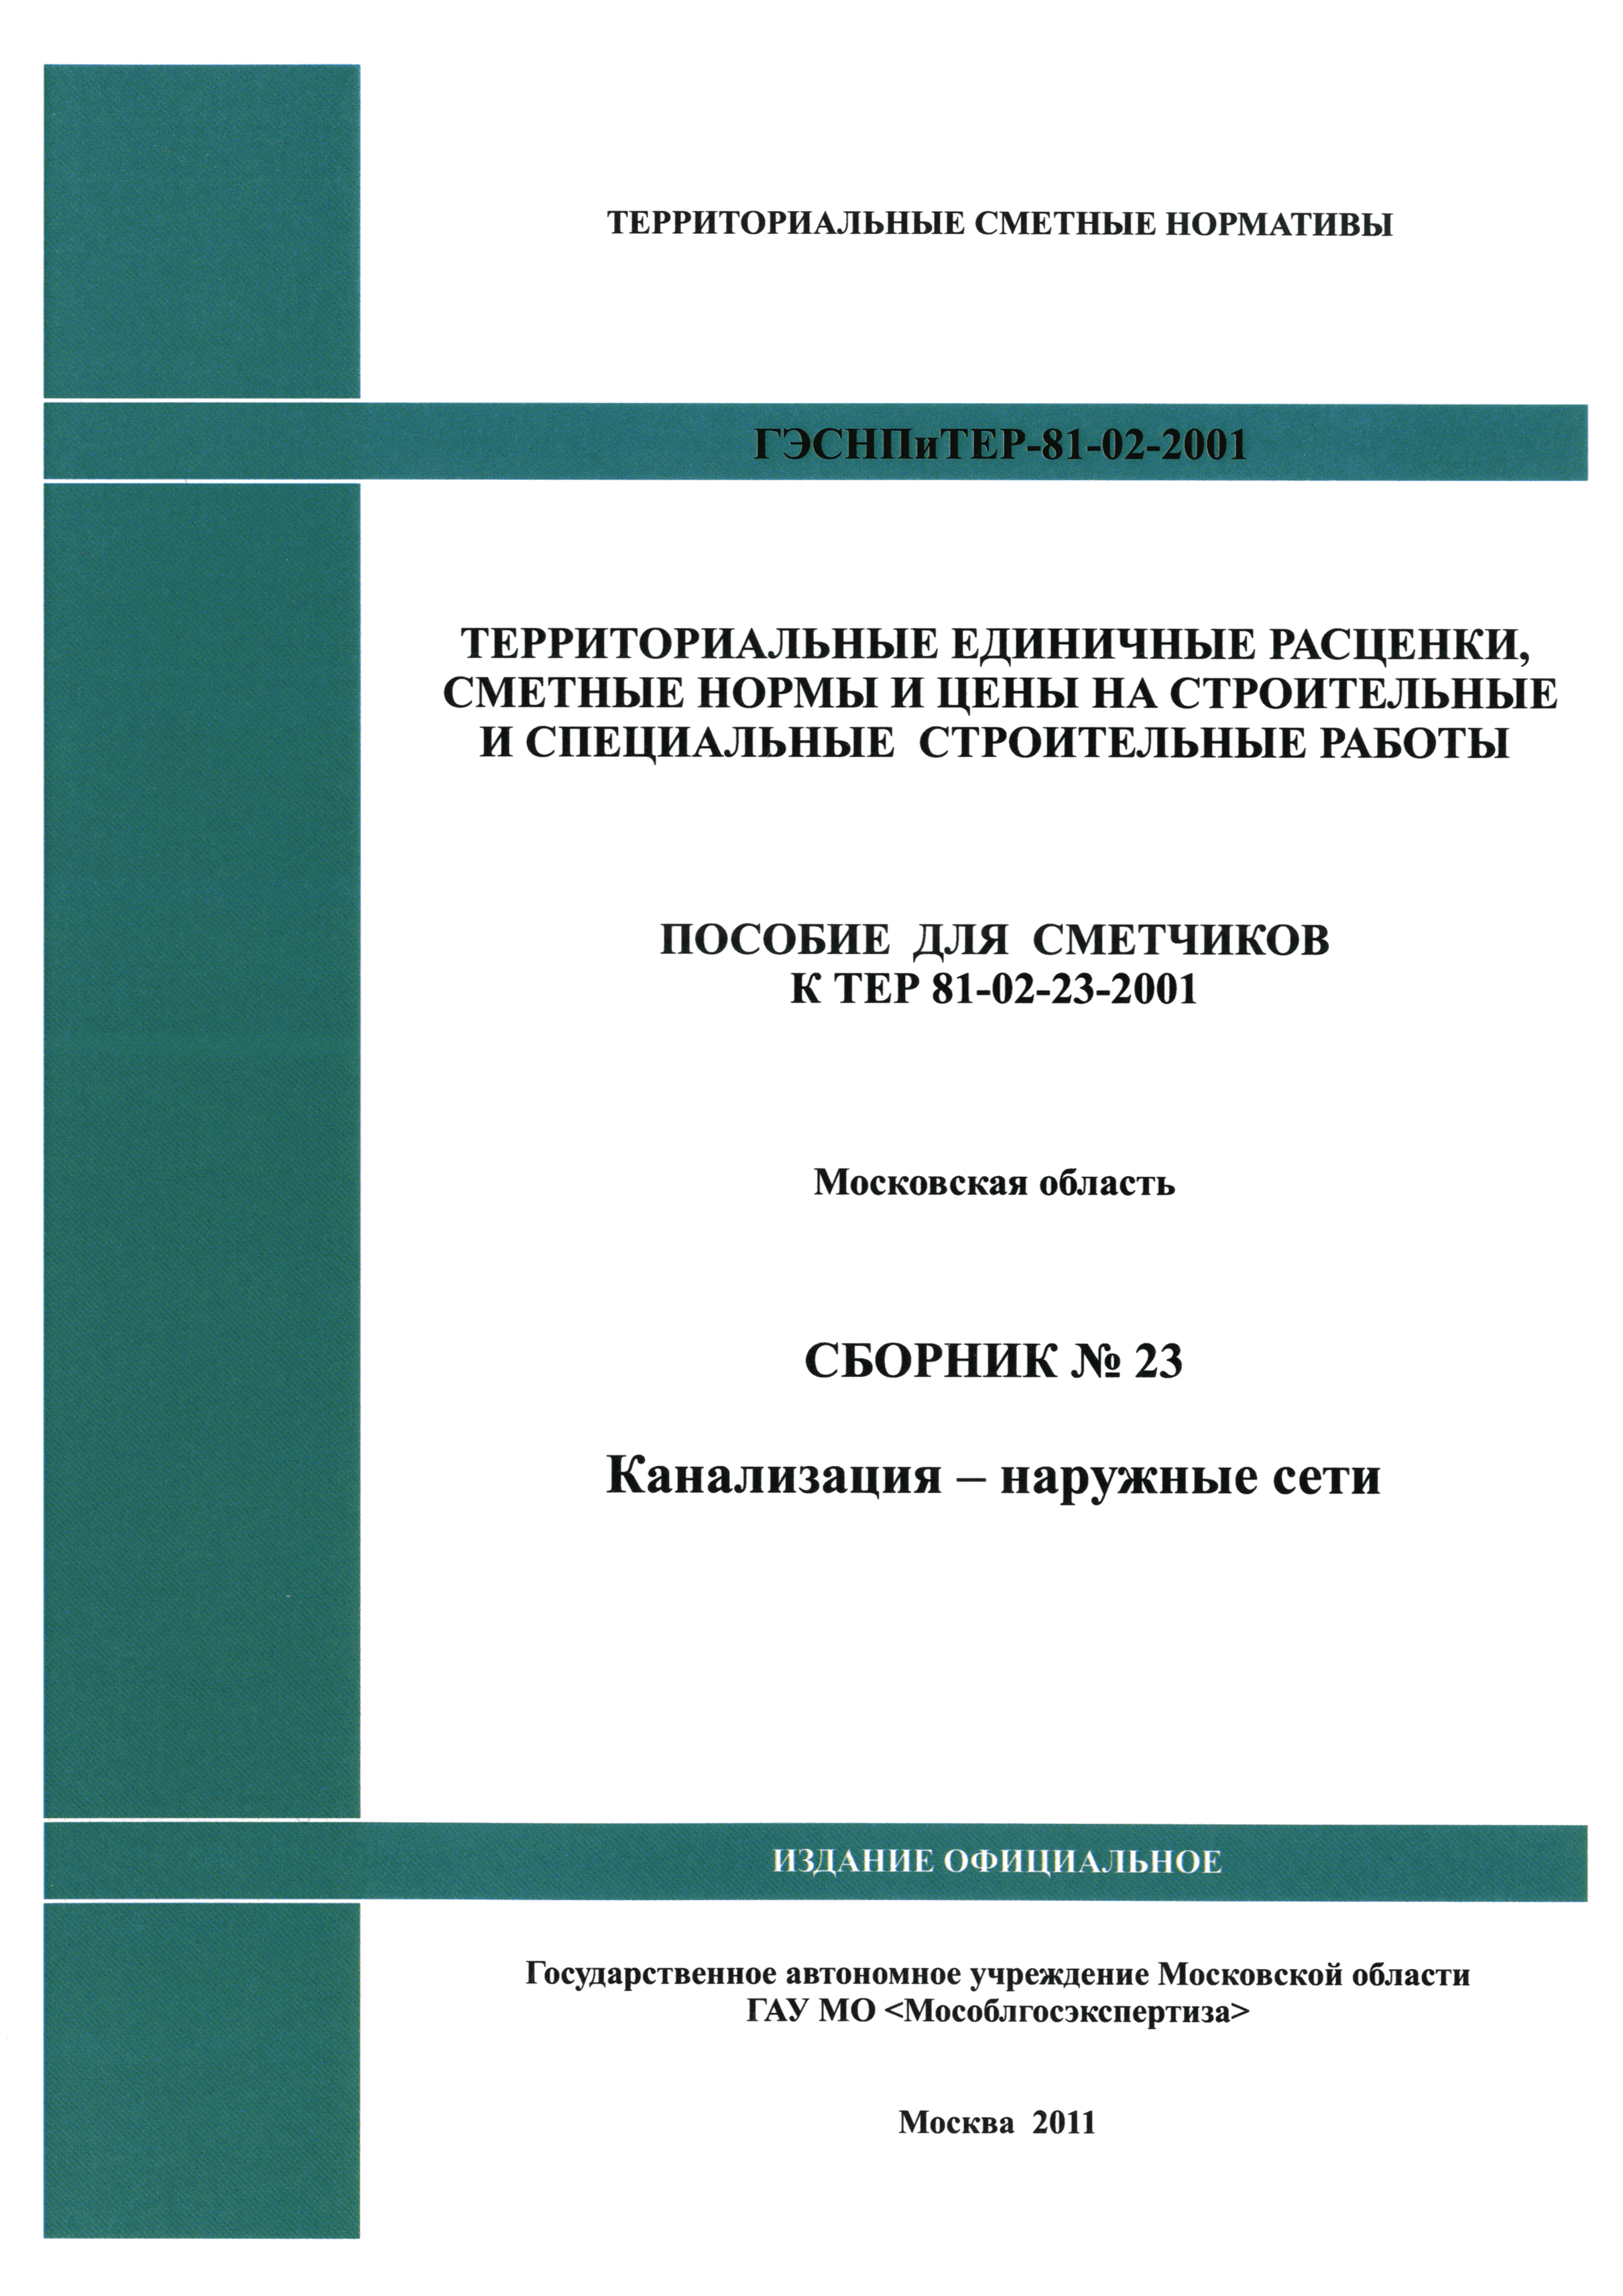 ГЭСНПиТЕР 2001-23 Московской области